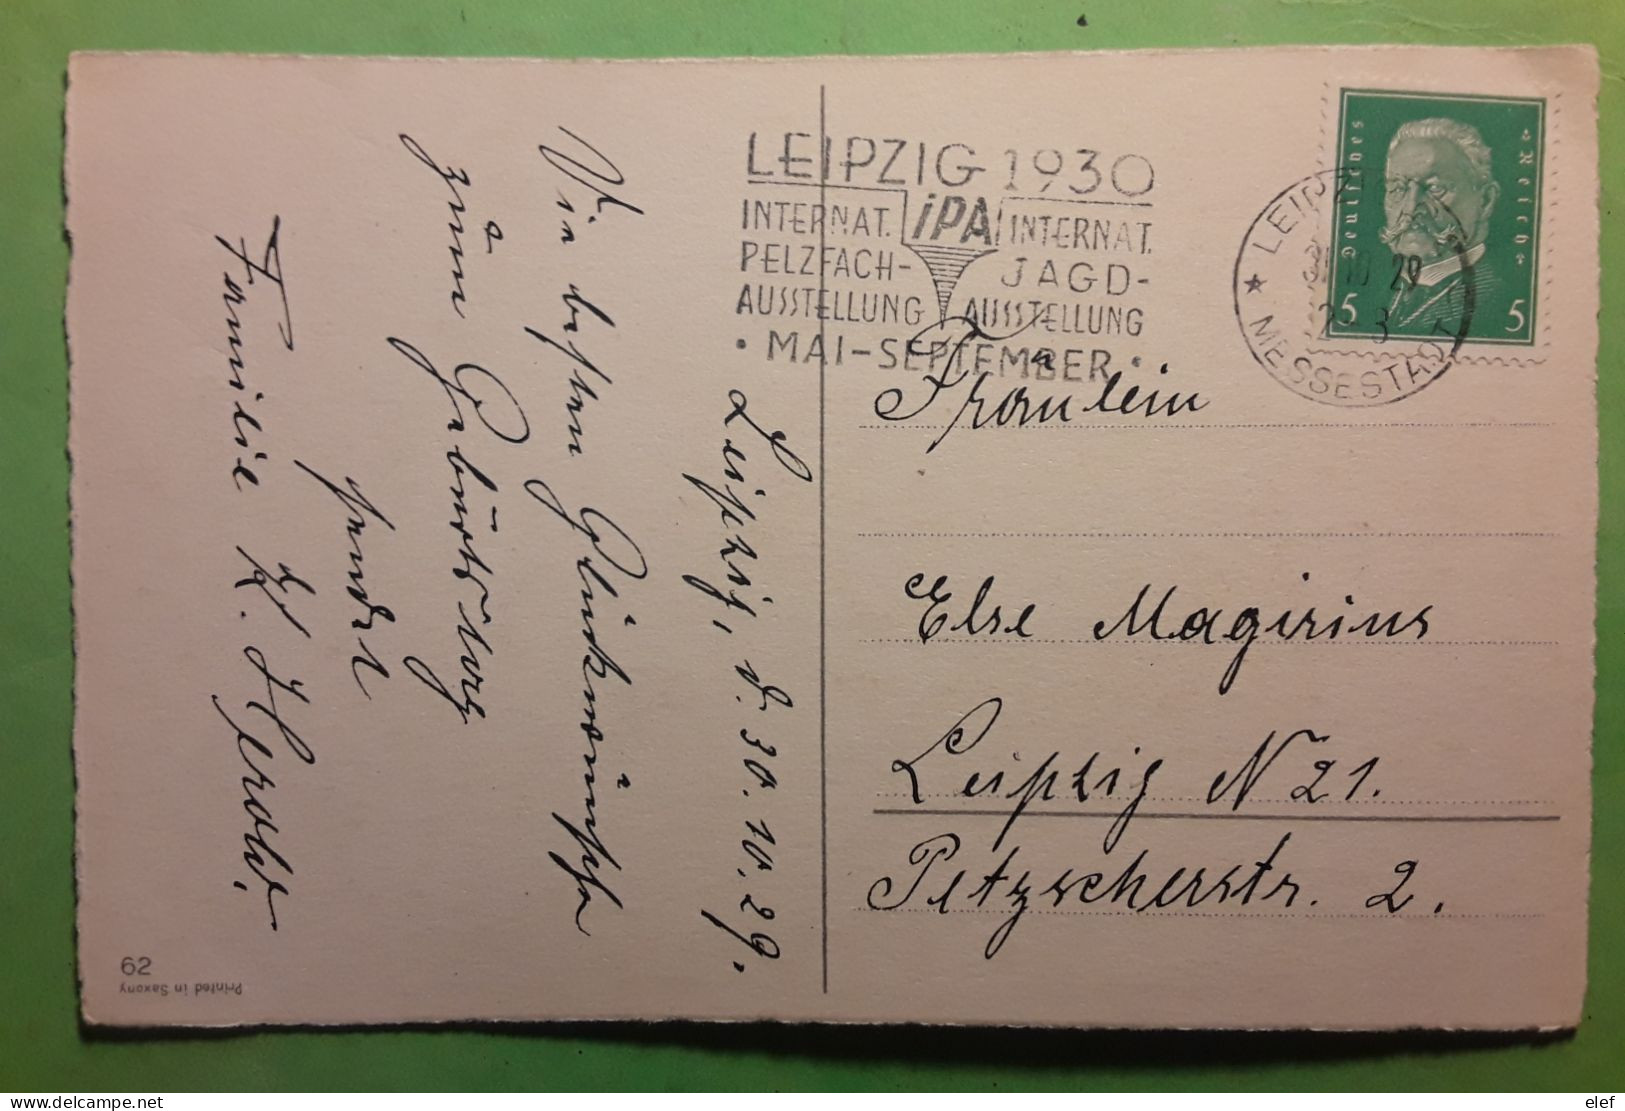 Flamme Chasse   IPA Internat PELZFACH JAGD AUSTELLUNG LEIPZIG 1930,Deutsches Reich Postkarte Gluckwunsch Z Geburtstage - Tiro (armi)